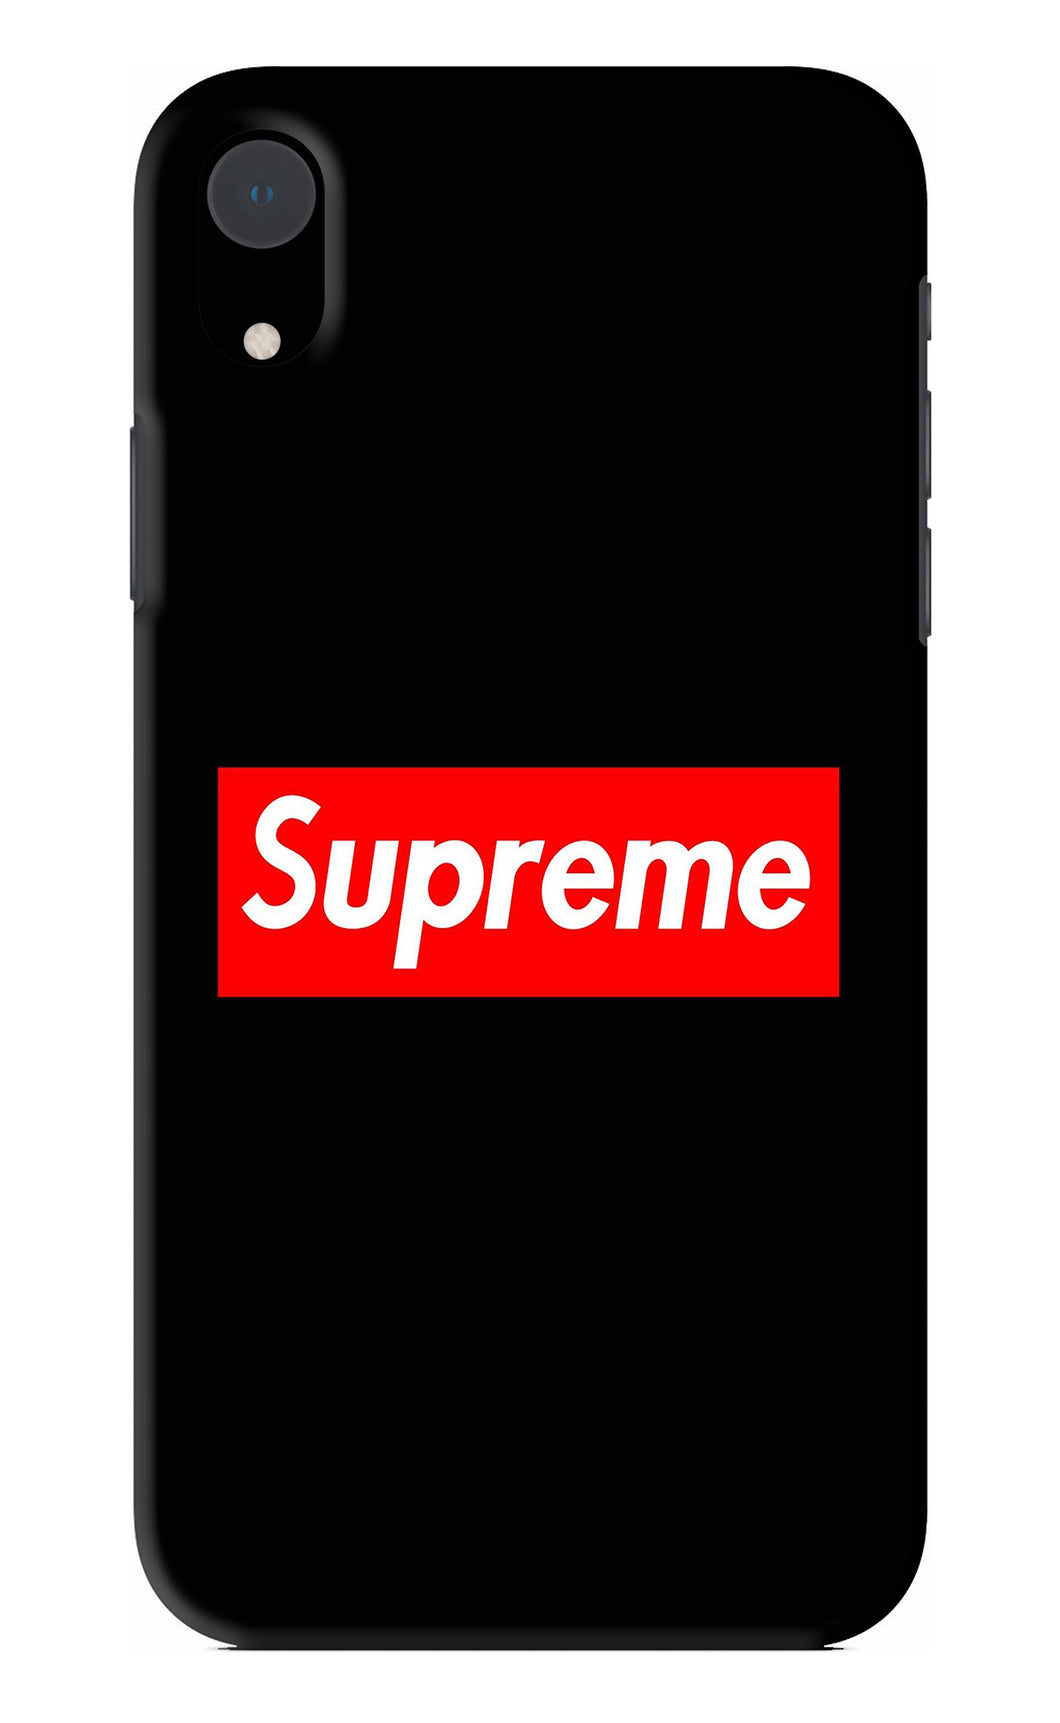 Supreme iPhone XR Back Skin Wrap